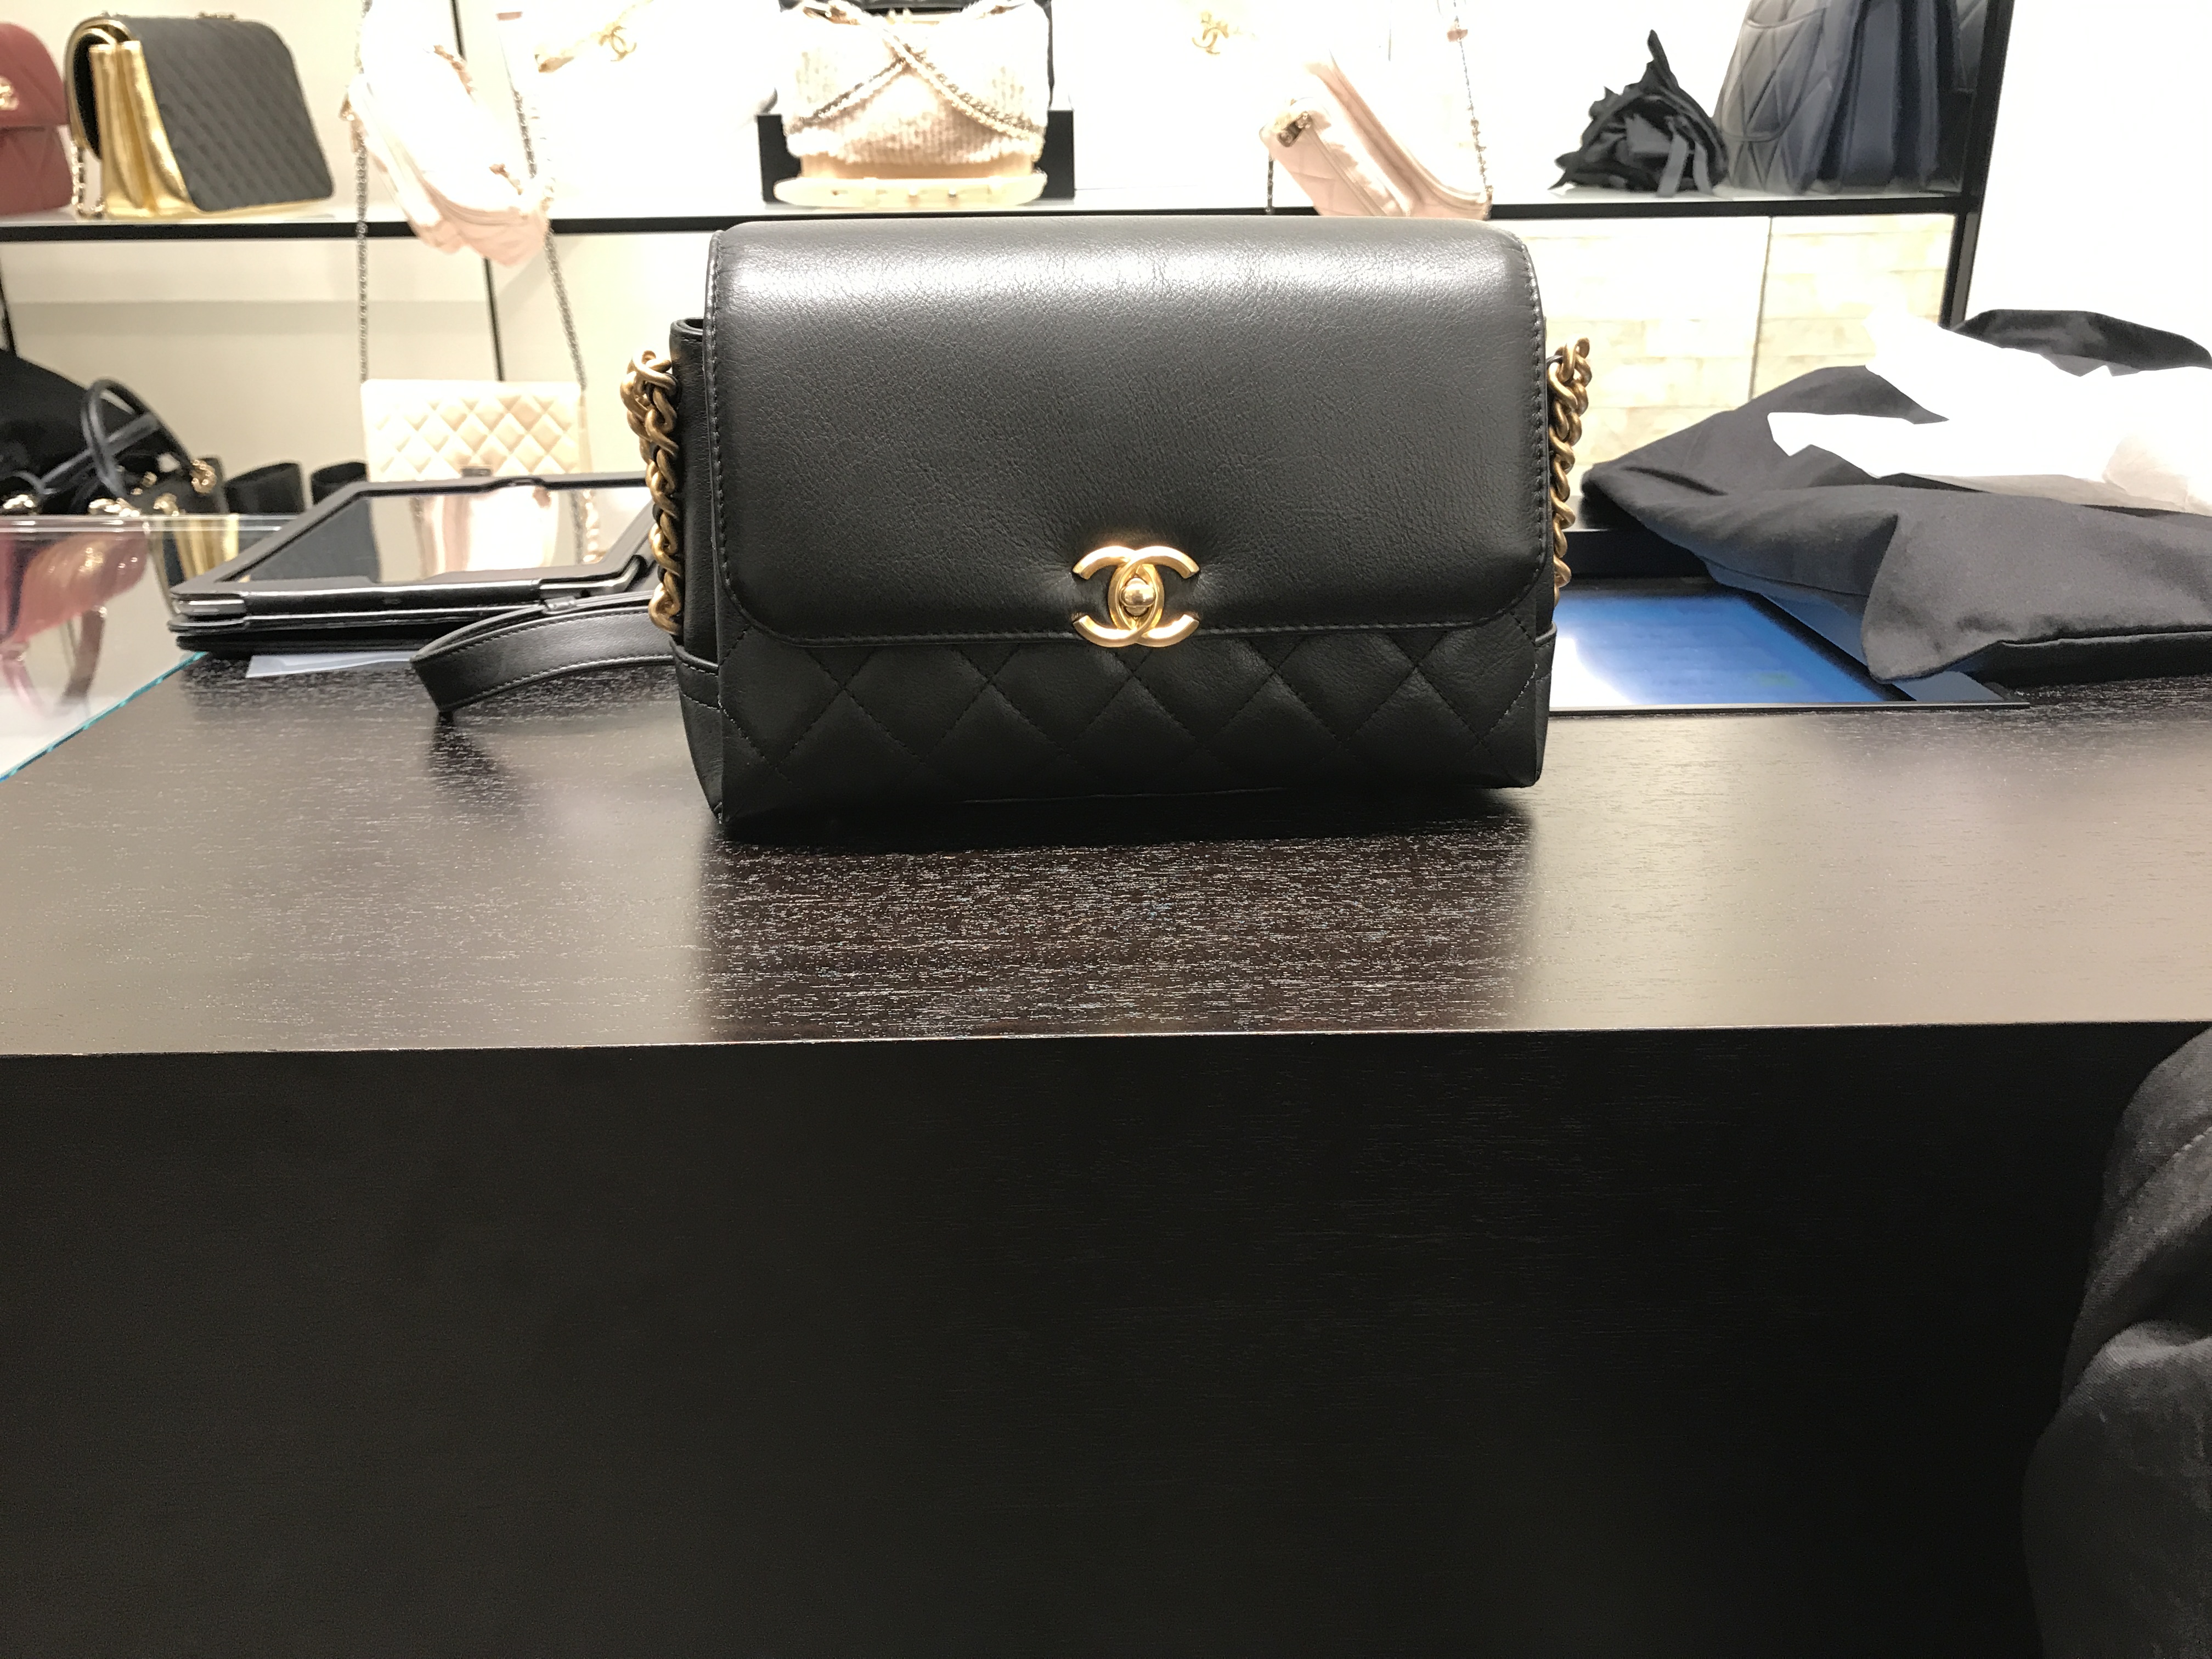 Chanel Fall Winter 2019 Seasonal Bag Collection Act 1